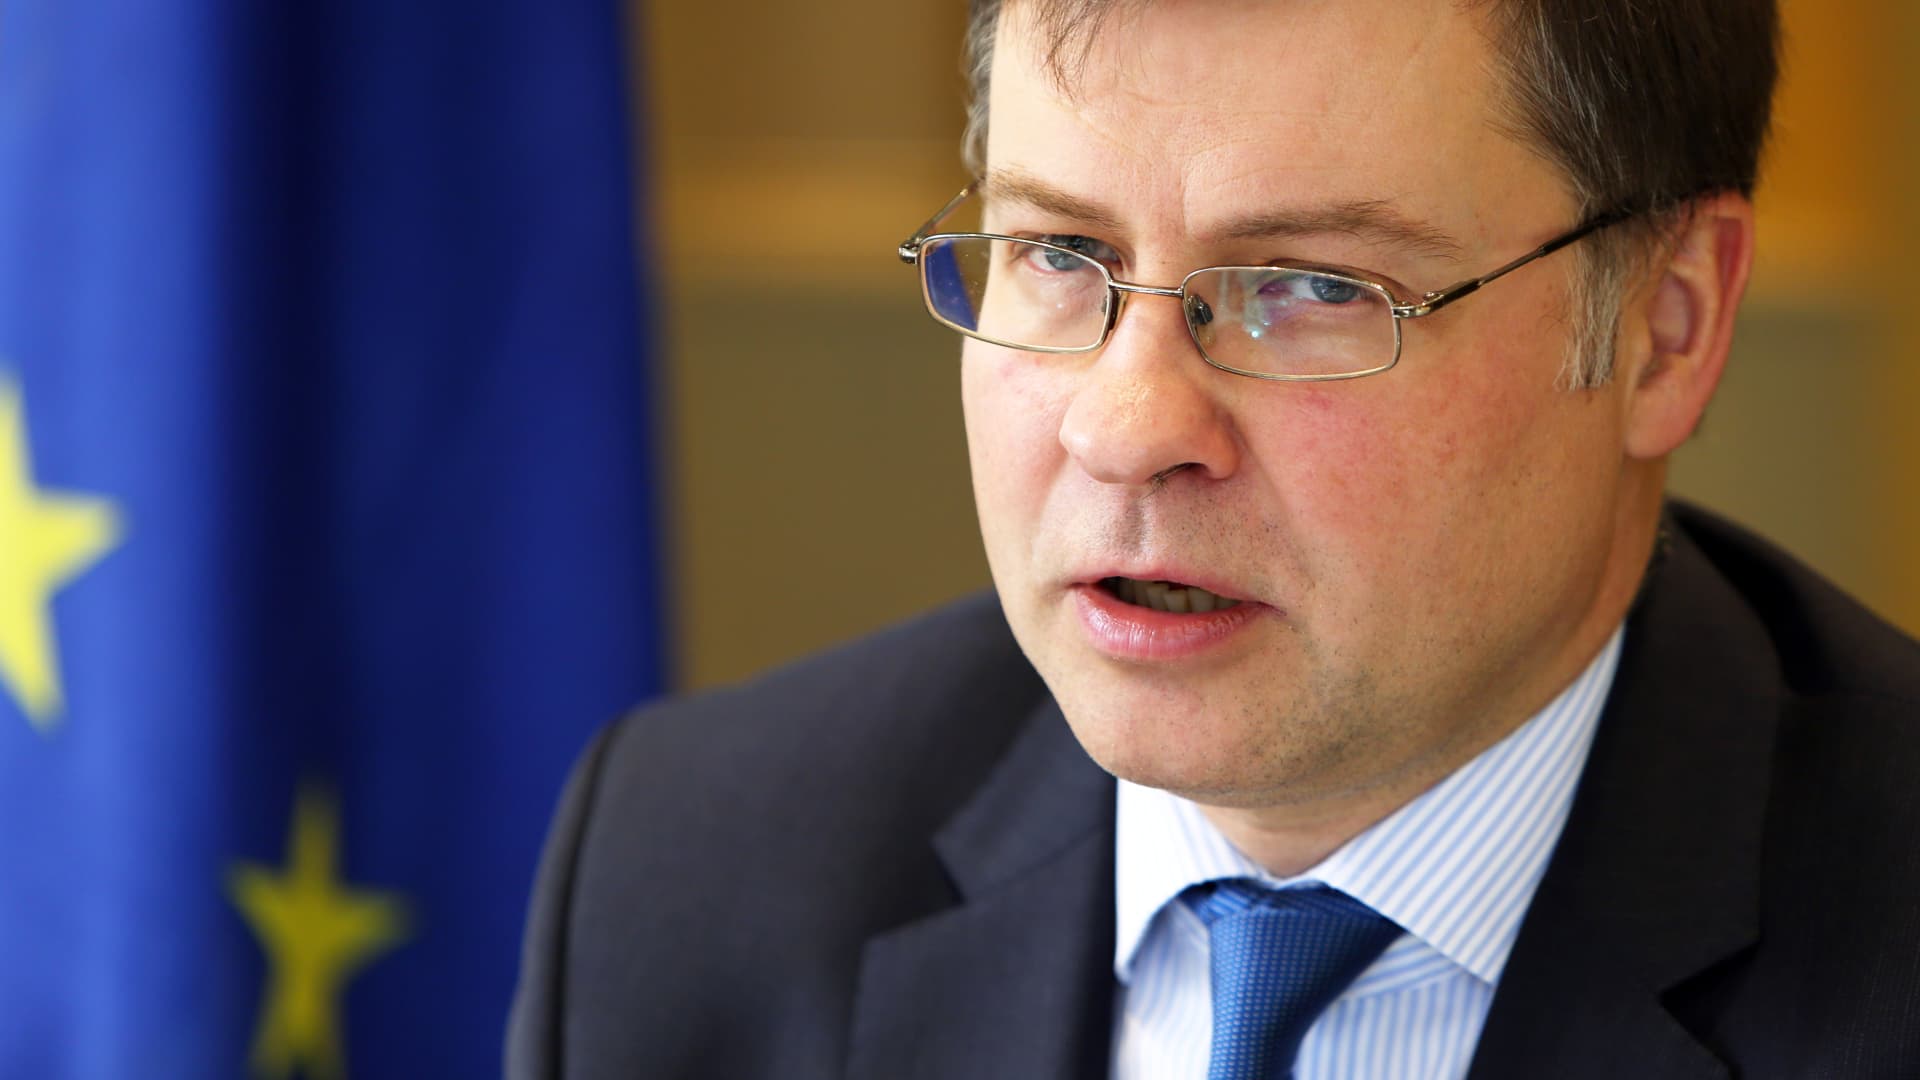 Ticaret şefi Dombrovskis, Çin ile AB arasındaki ilişkilerin bir dönüm noktasında olduğunu söyledi